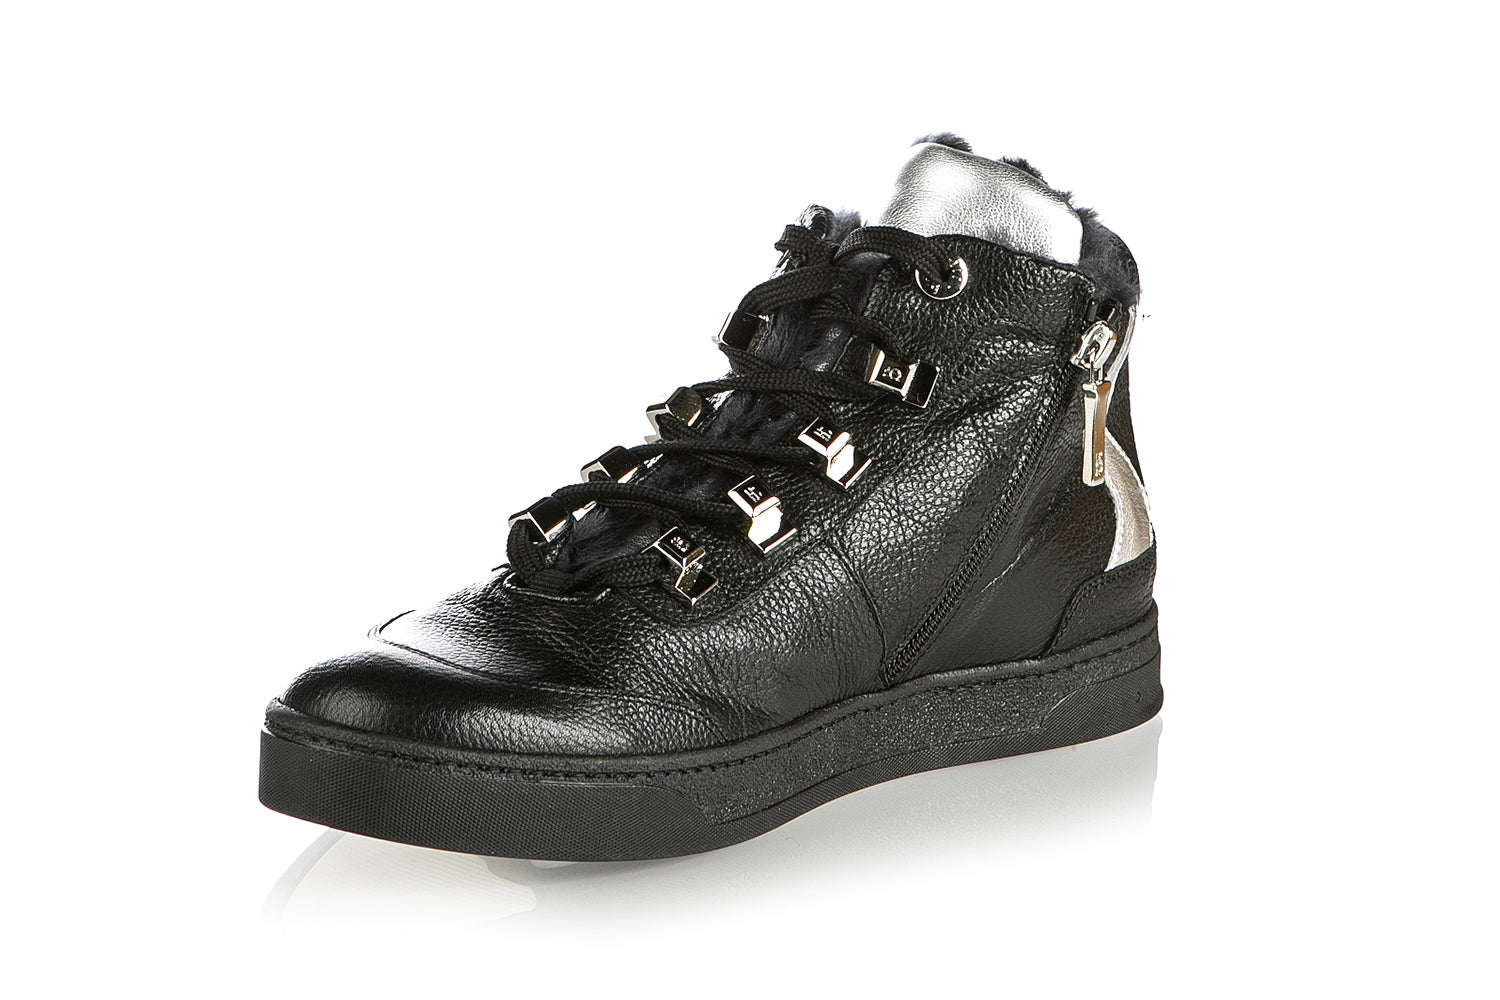 6852 Roberto Botticelli Sneakers / Black